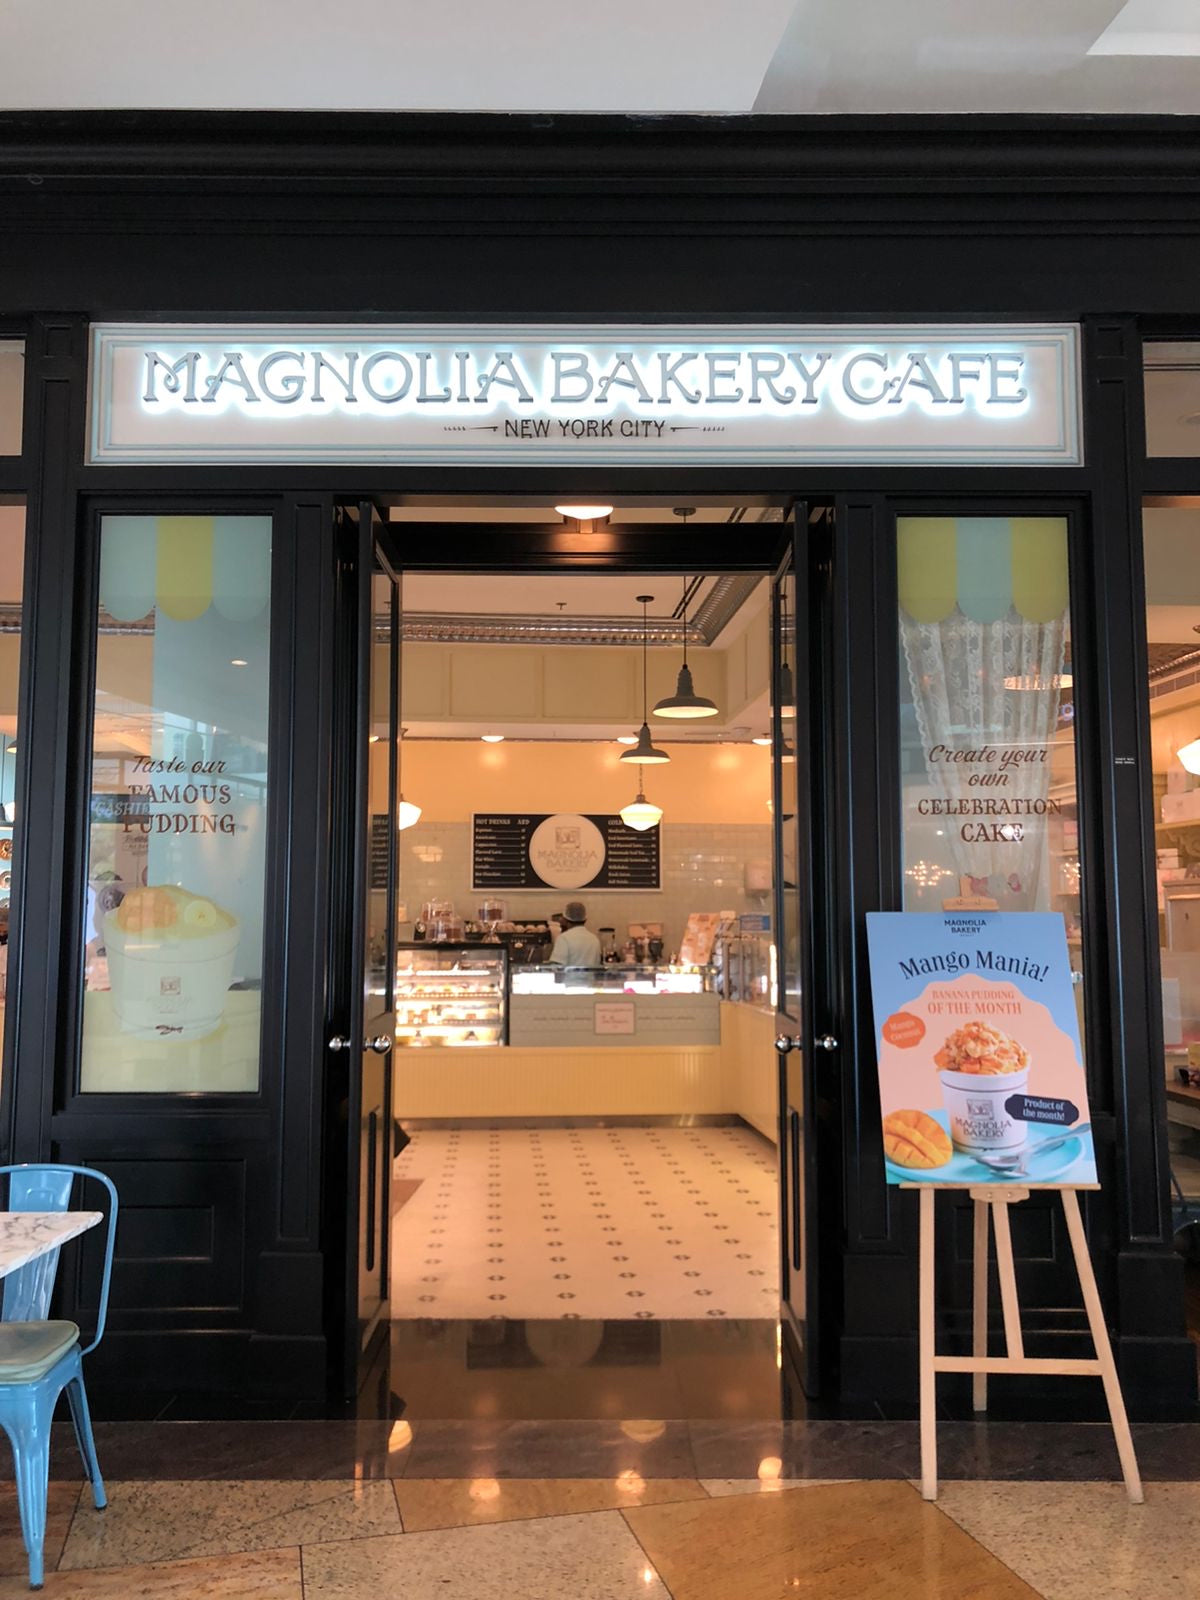 UAE - Magnolia Bakery Cafe